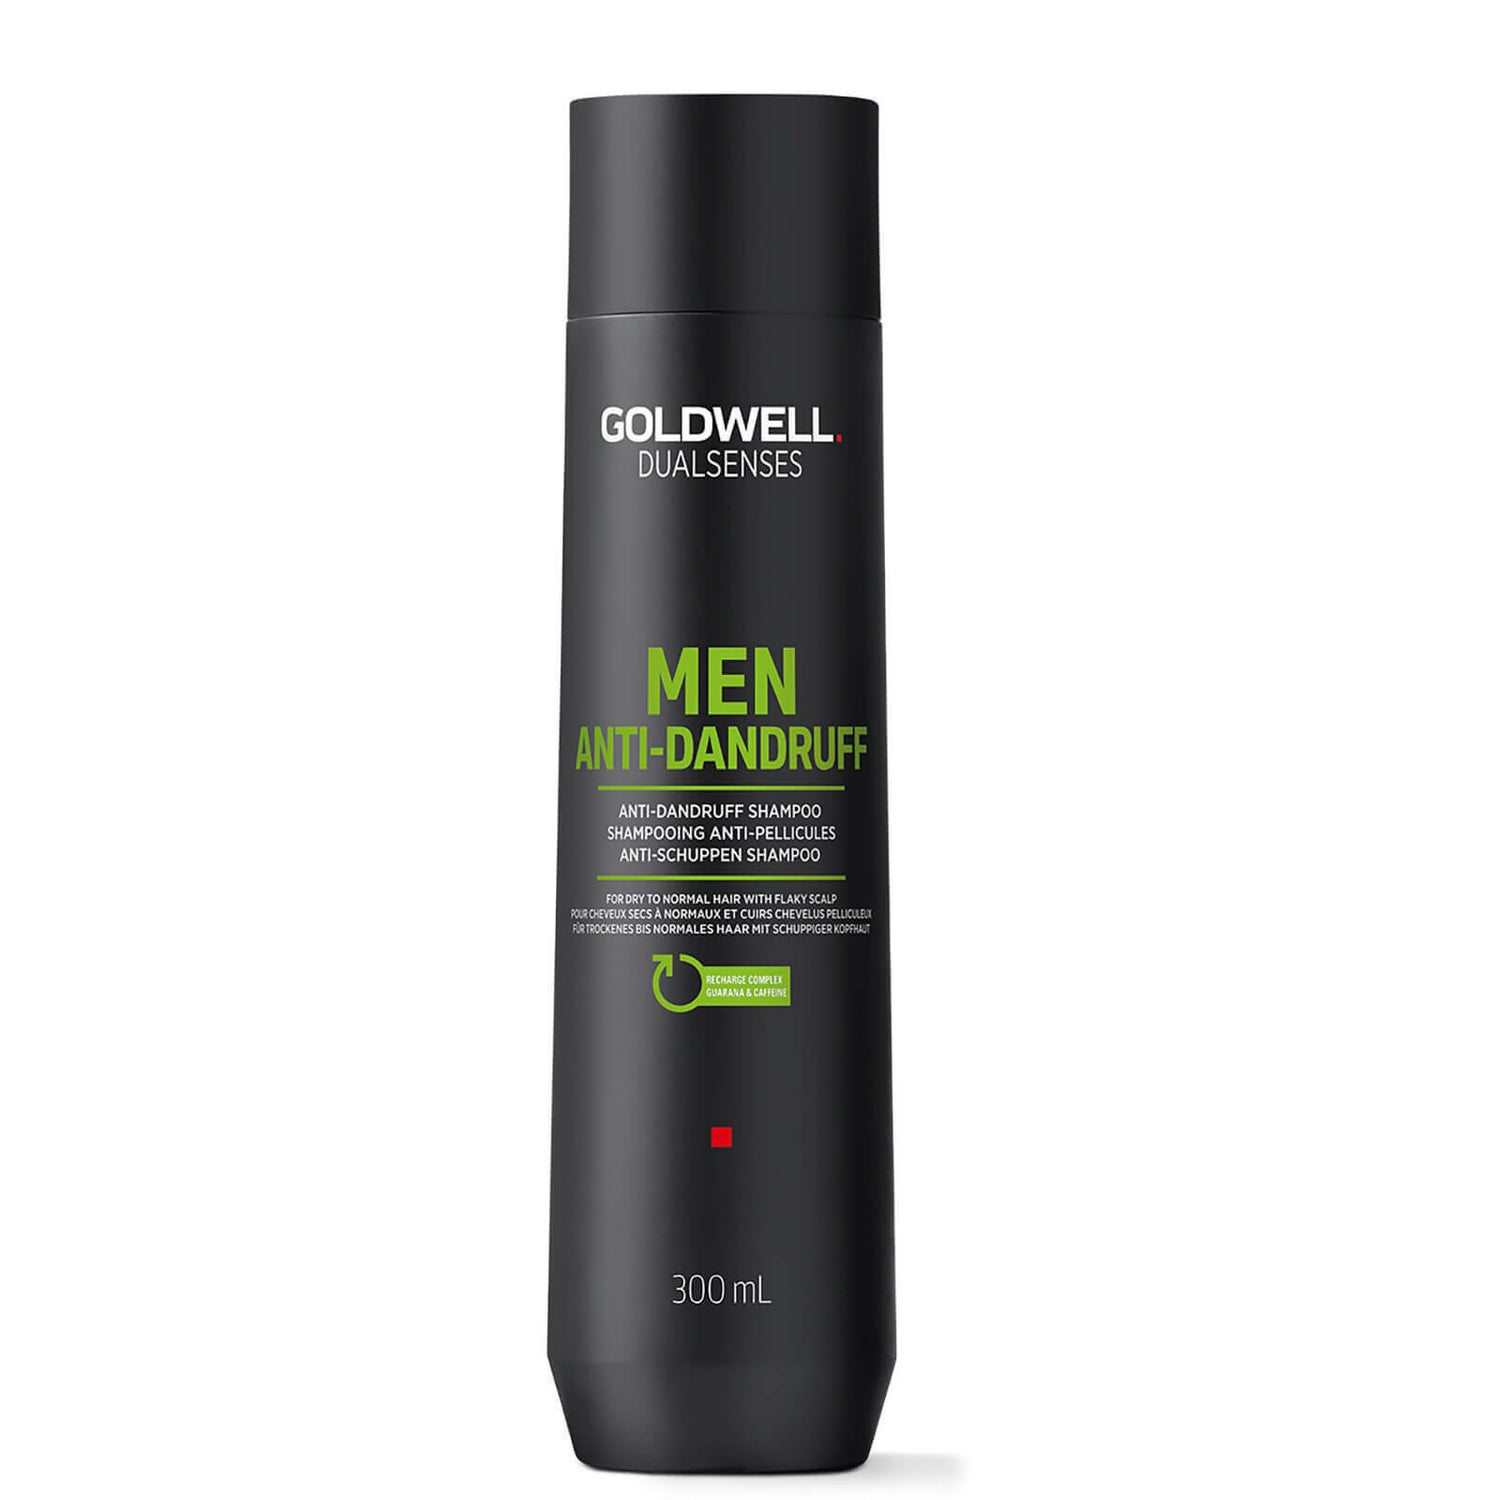 Goldwell Dualsenses for Men Shampoo Anti Forfora (300ml)